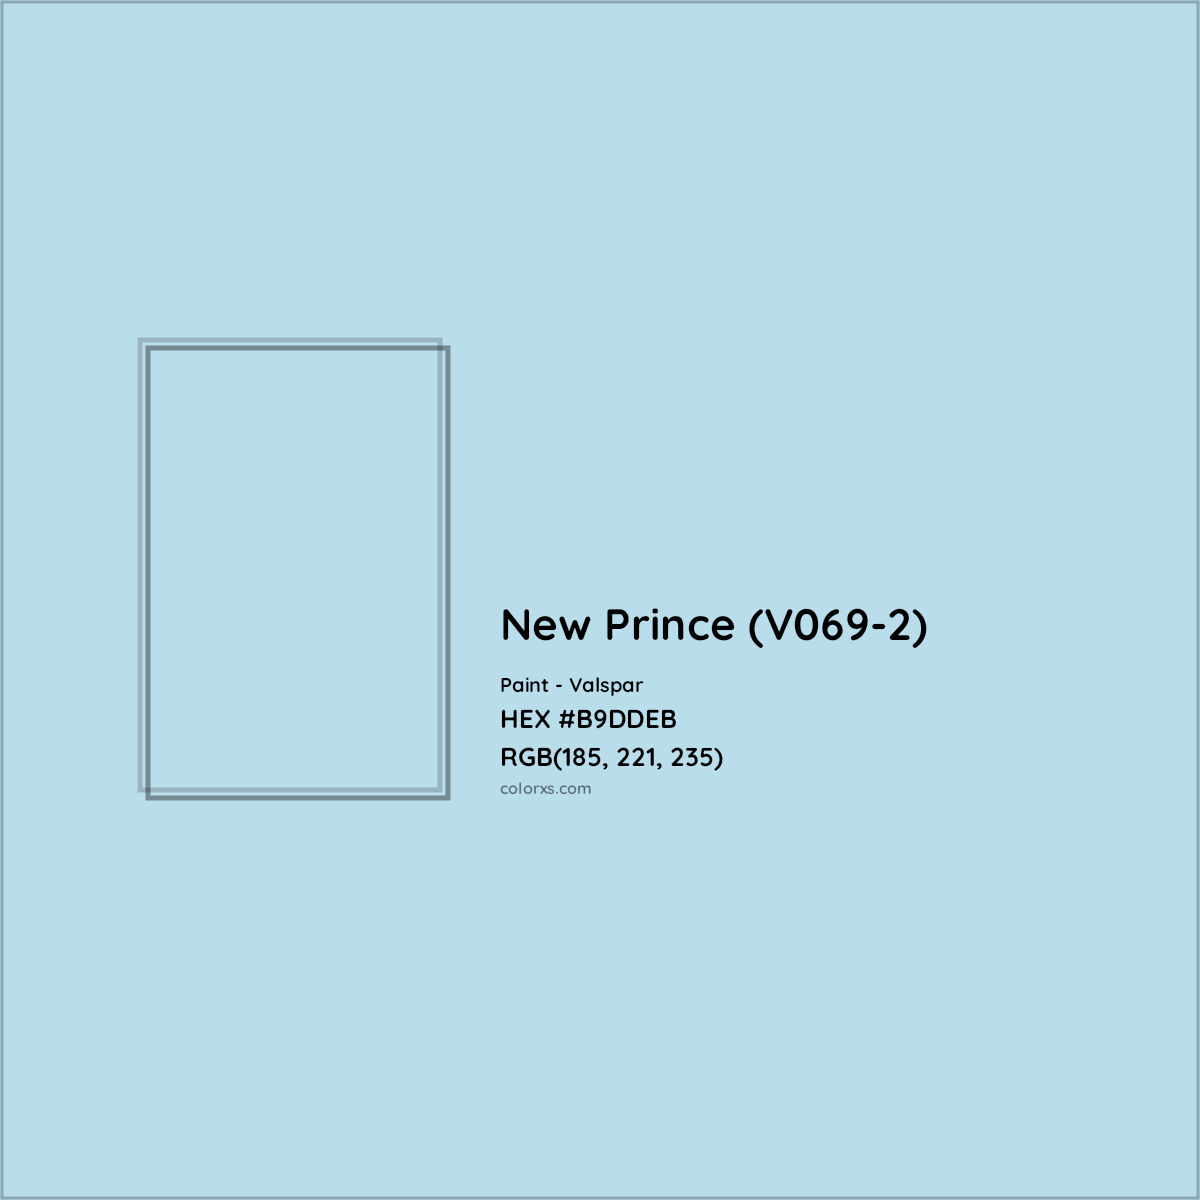 HEX #B9DDEB New Prince (V069-2) Paint Valspar - Color Code